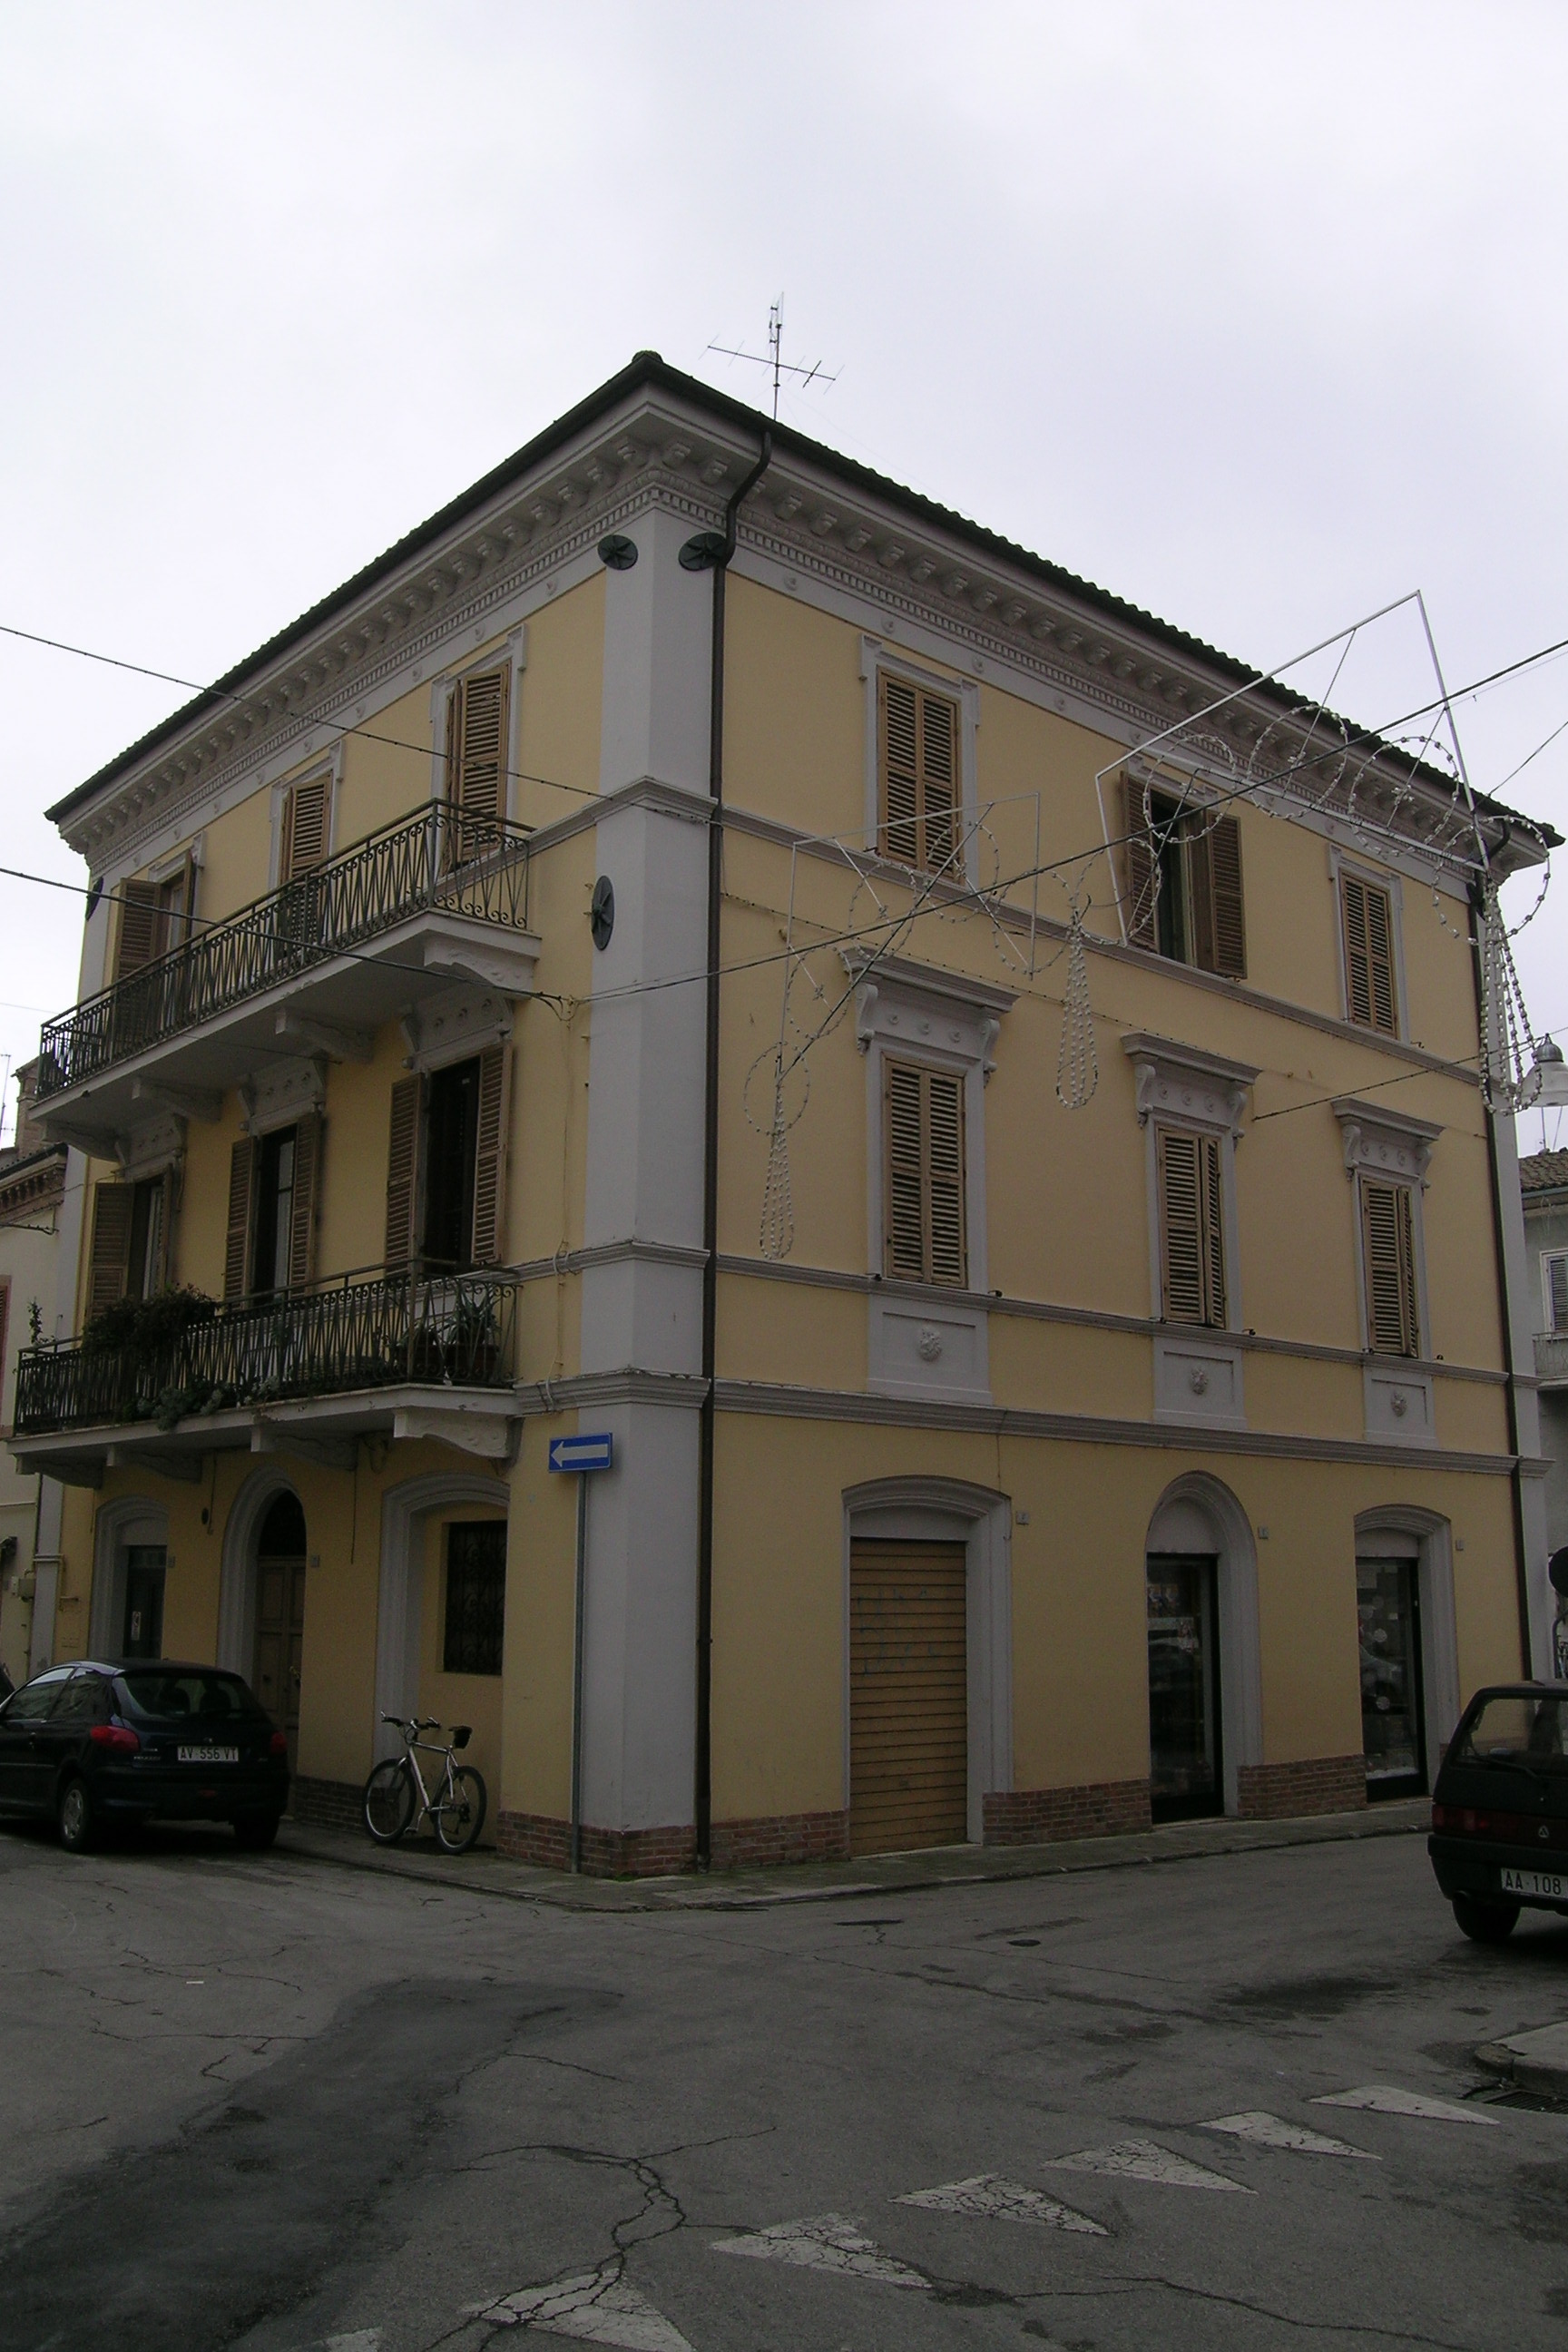 Palazzo signorile (palazzo, signorile) - Castelraimondo (MC) 